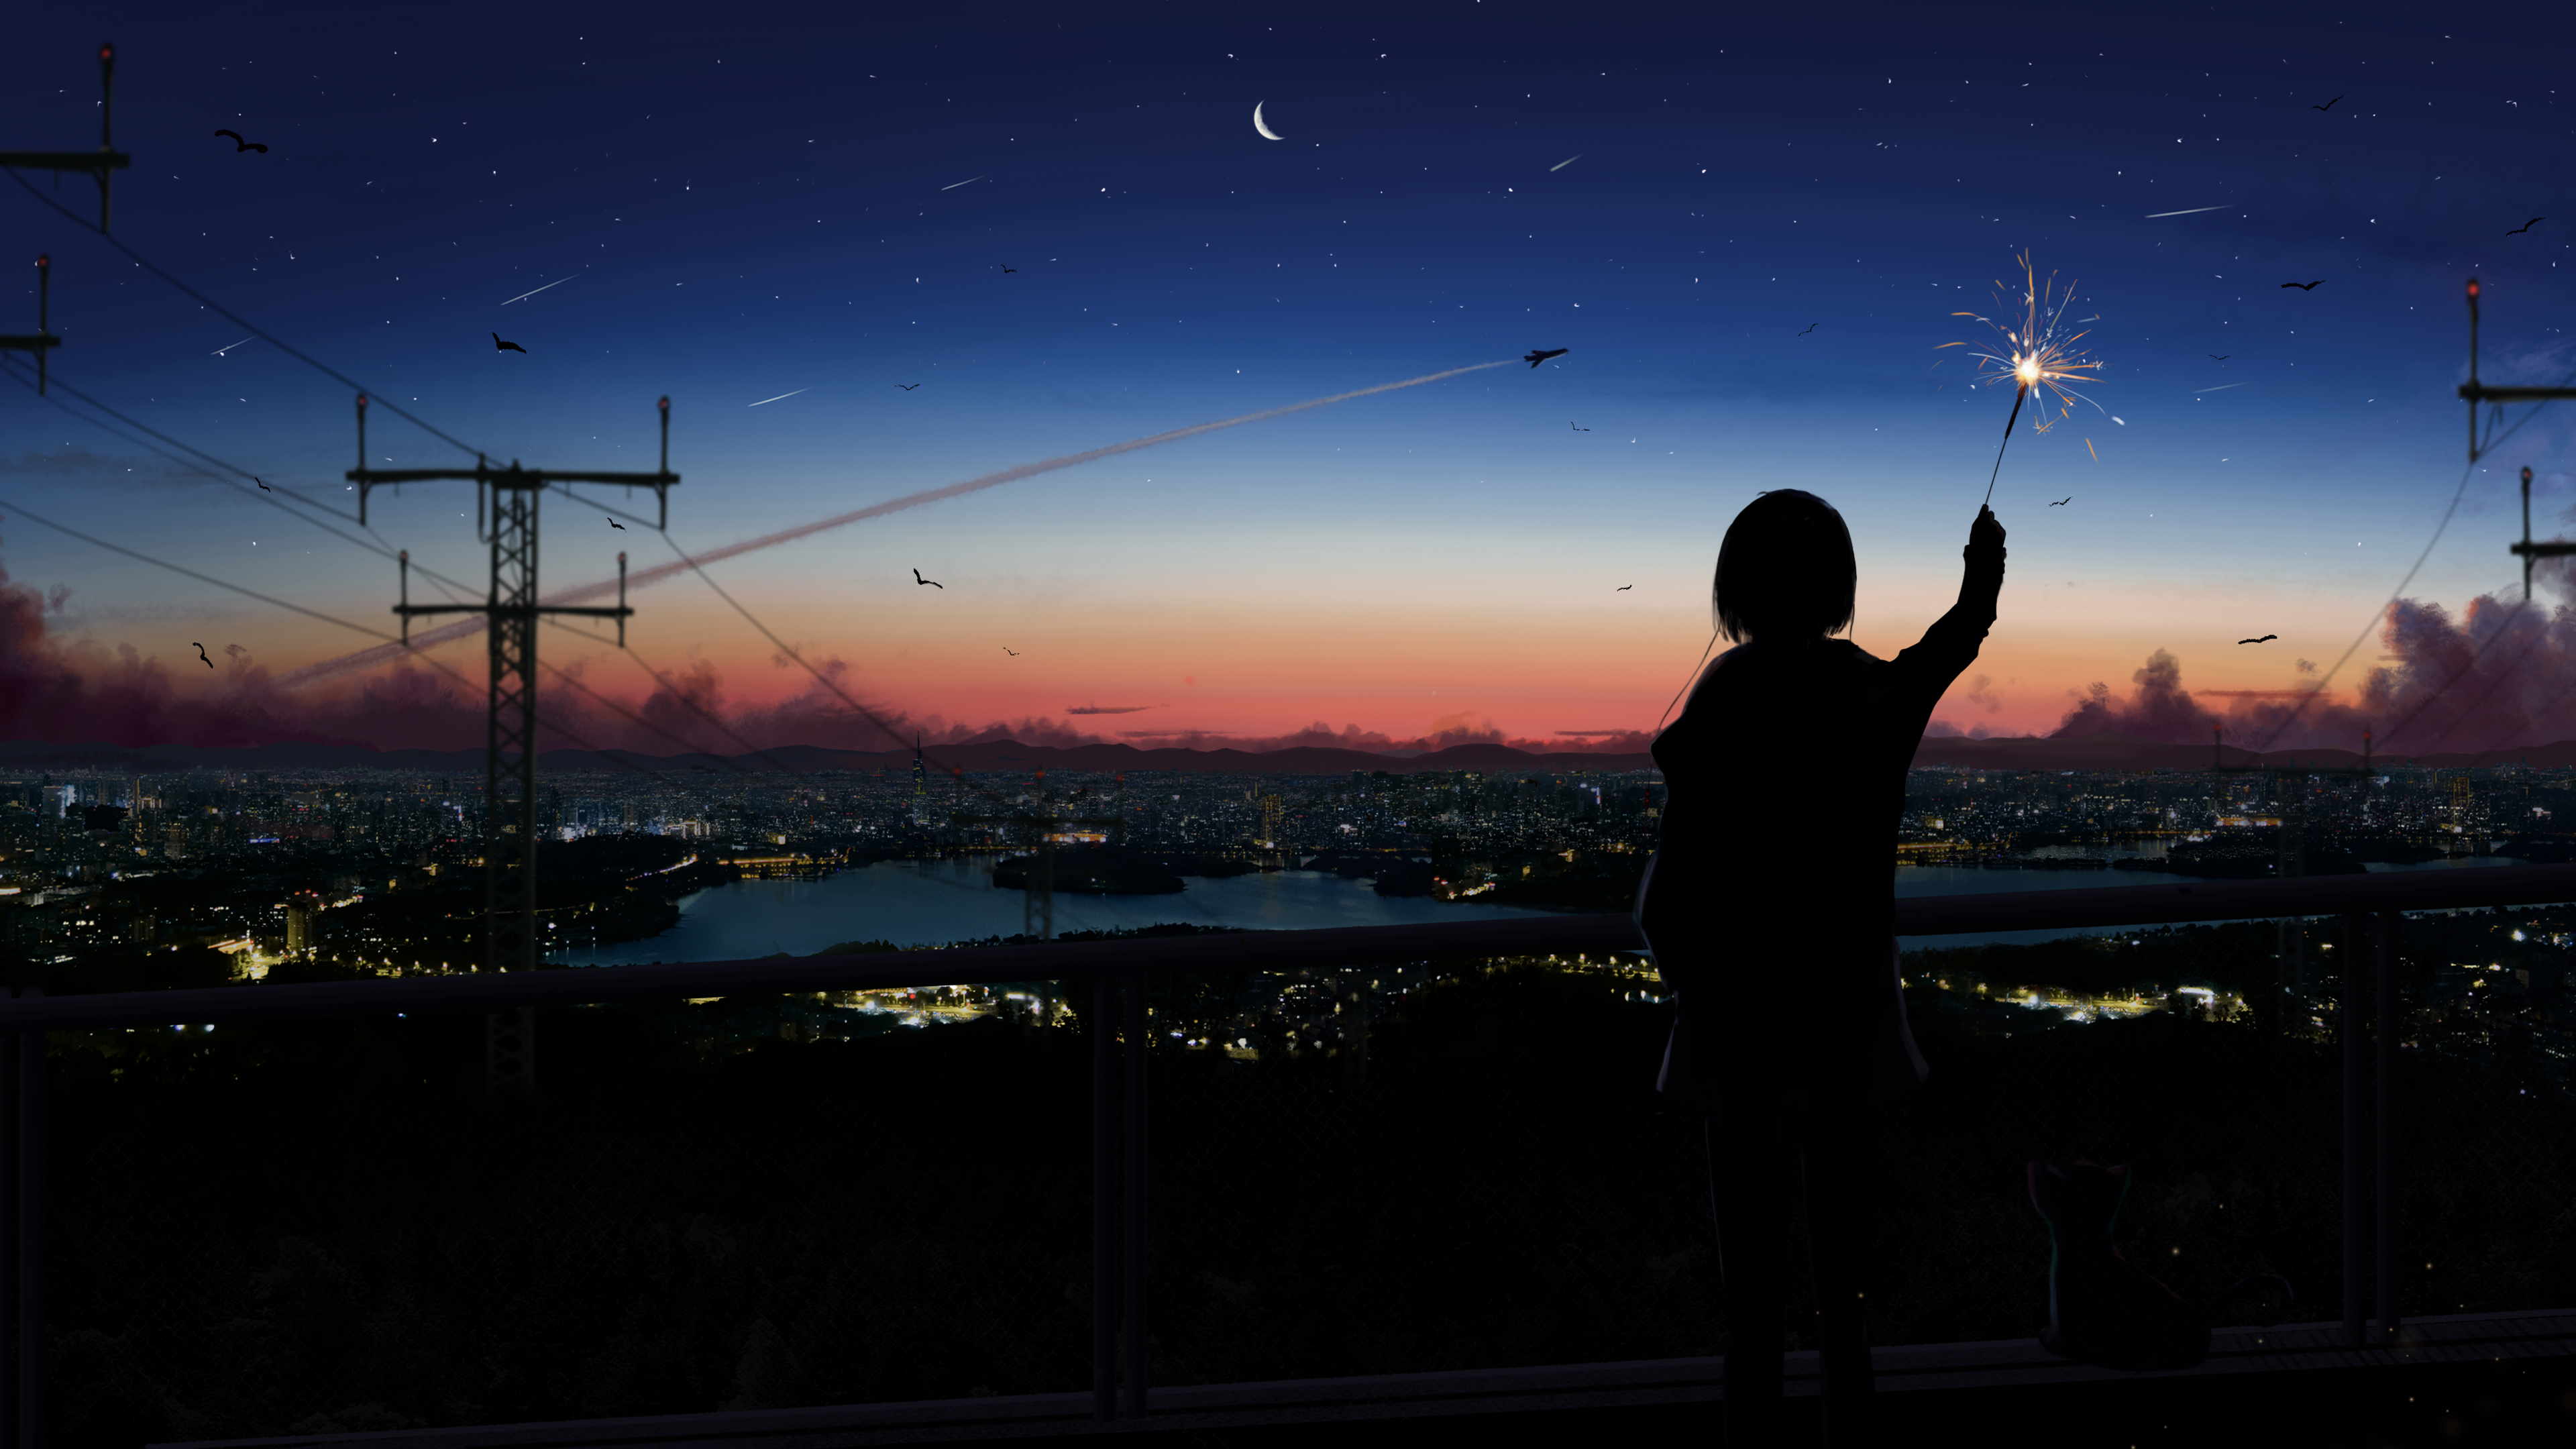 Yu Jing Illustration Clouds Sunset Glow Sunset Starred Sky Aircraft Anime Girls Utility Pole City Ri 3840x2160